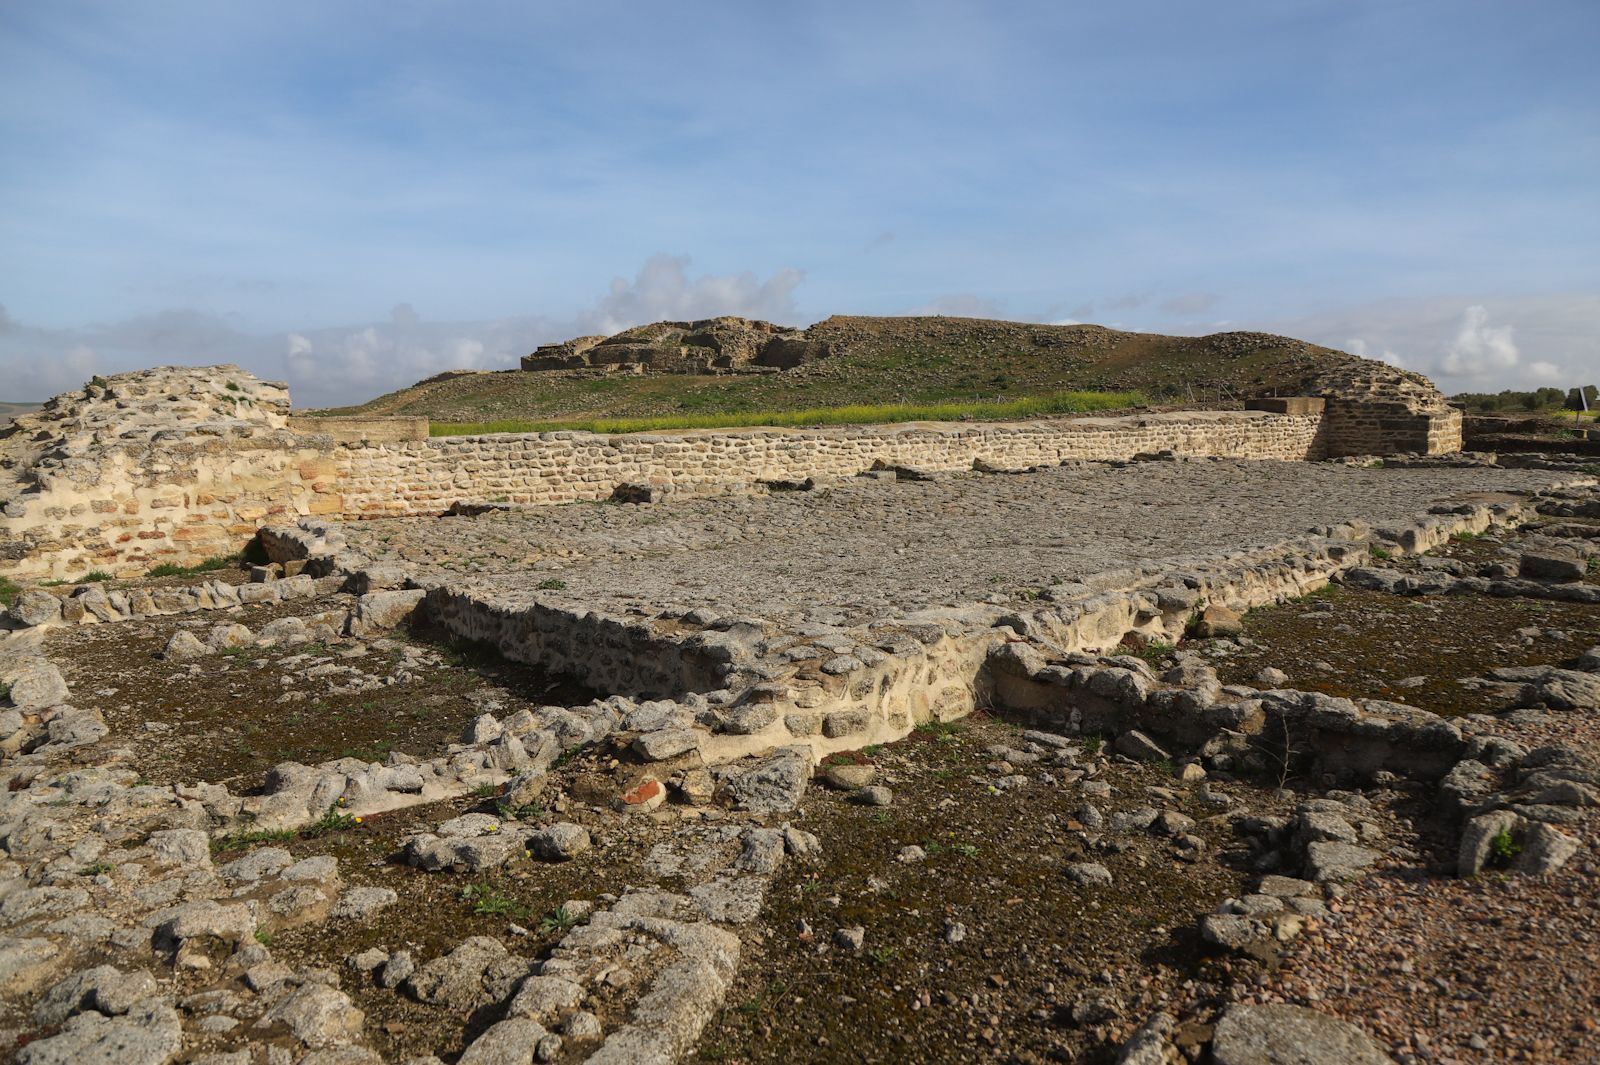 Sale a la luz un anfiteatro romano en Ategua